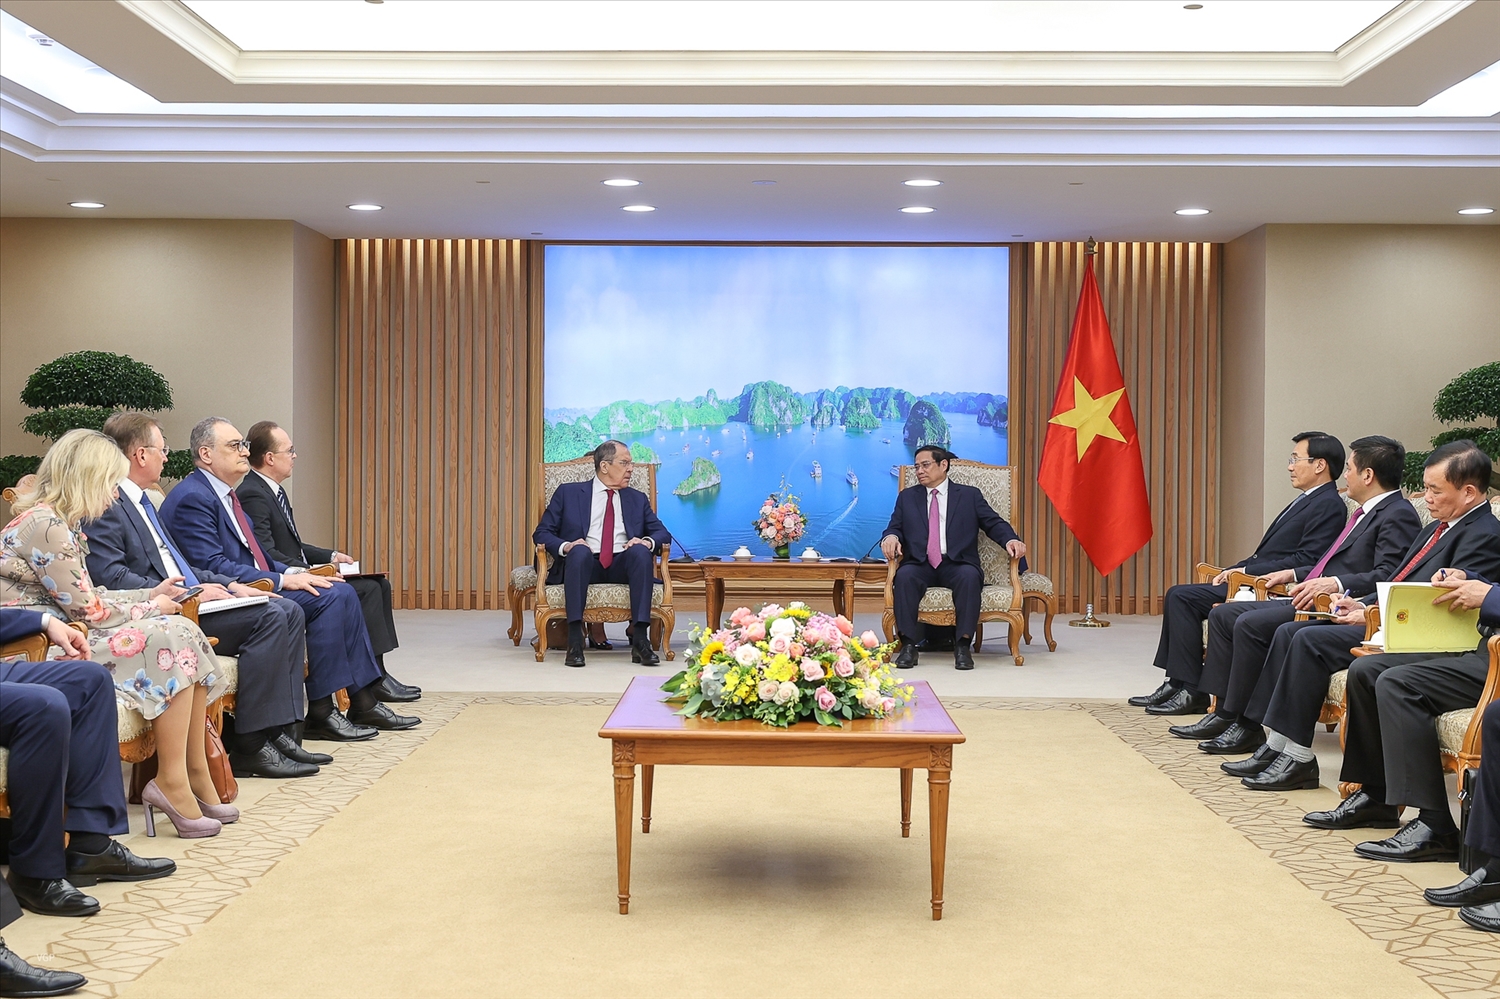 Thủ tướng Chính phủ cũng cảm ơn Chính phủ Nga đã quan tâm và tạo điều kiện cho cộng đồng người Việt tại Nga được sinh sống, làm ăn và học tập ổn định tại Nga - Ảnh: VGP/Nhật Bắc